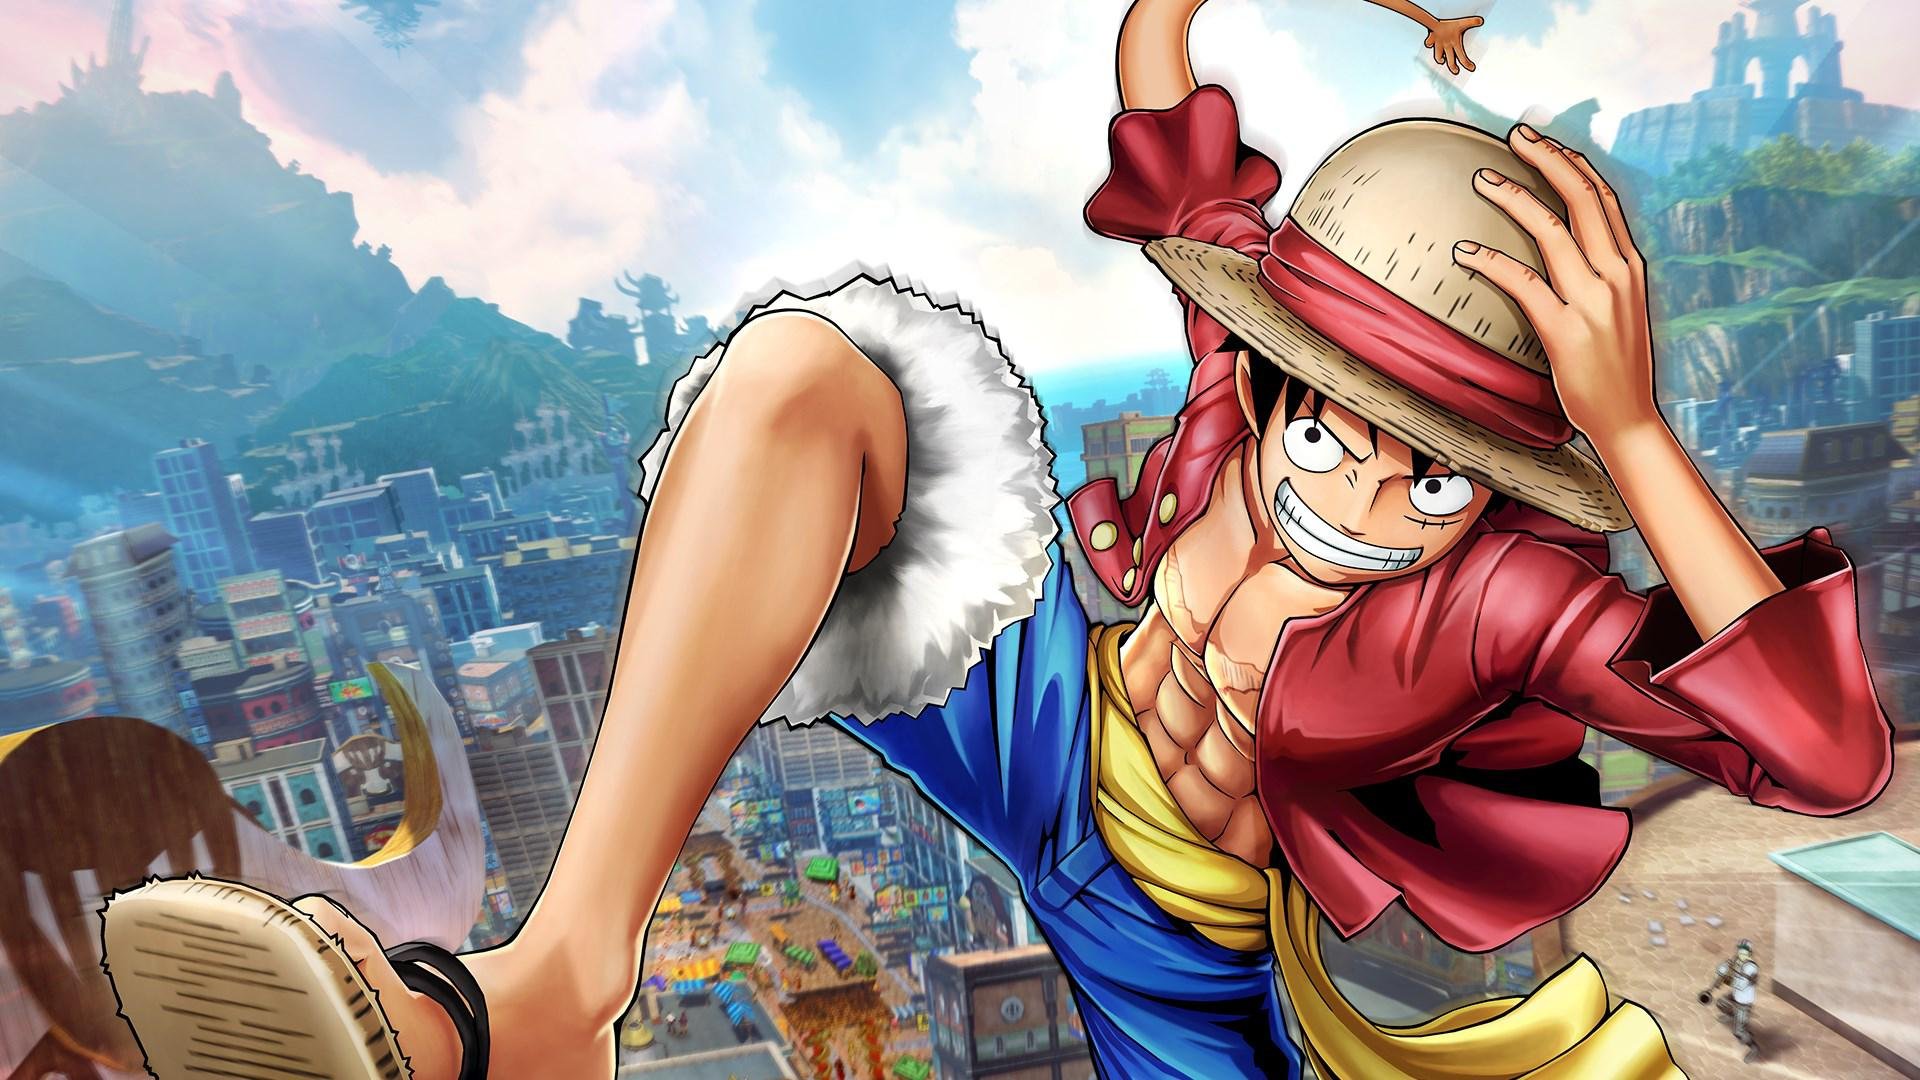 Netflix confirma segunda temporada de 'One Piece